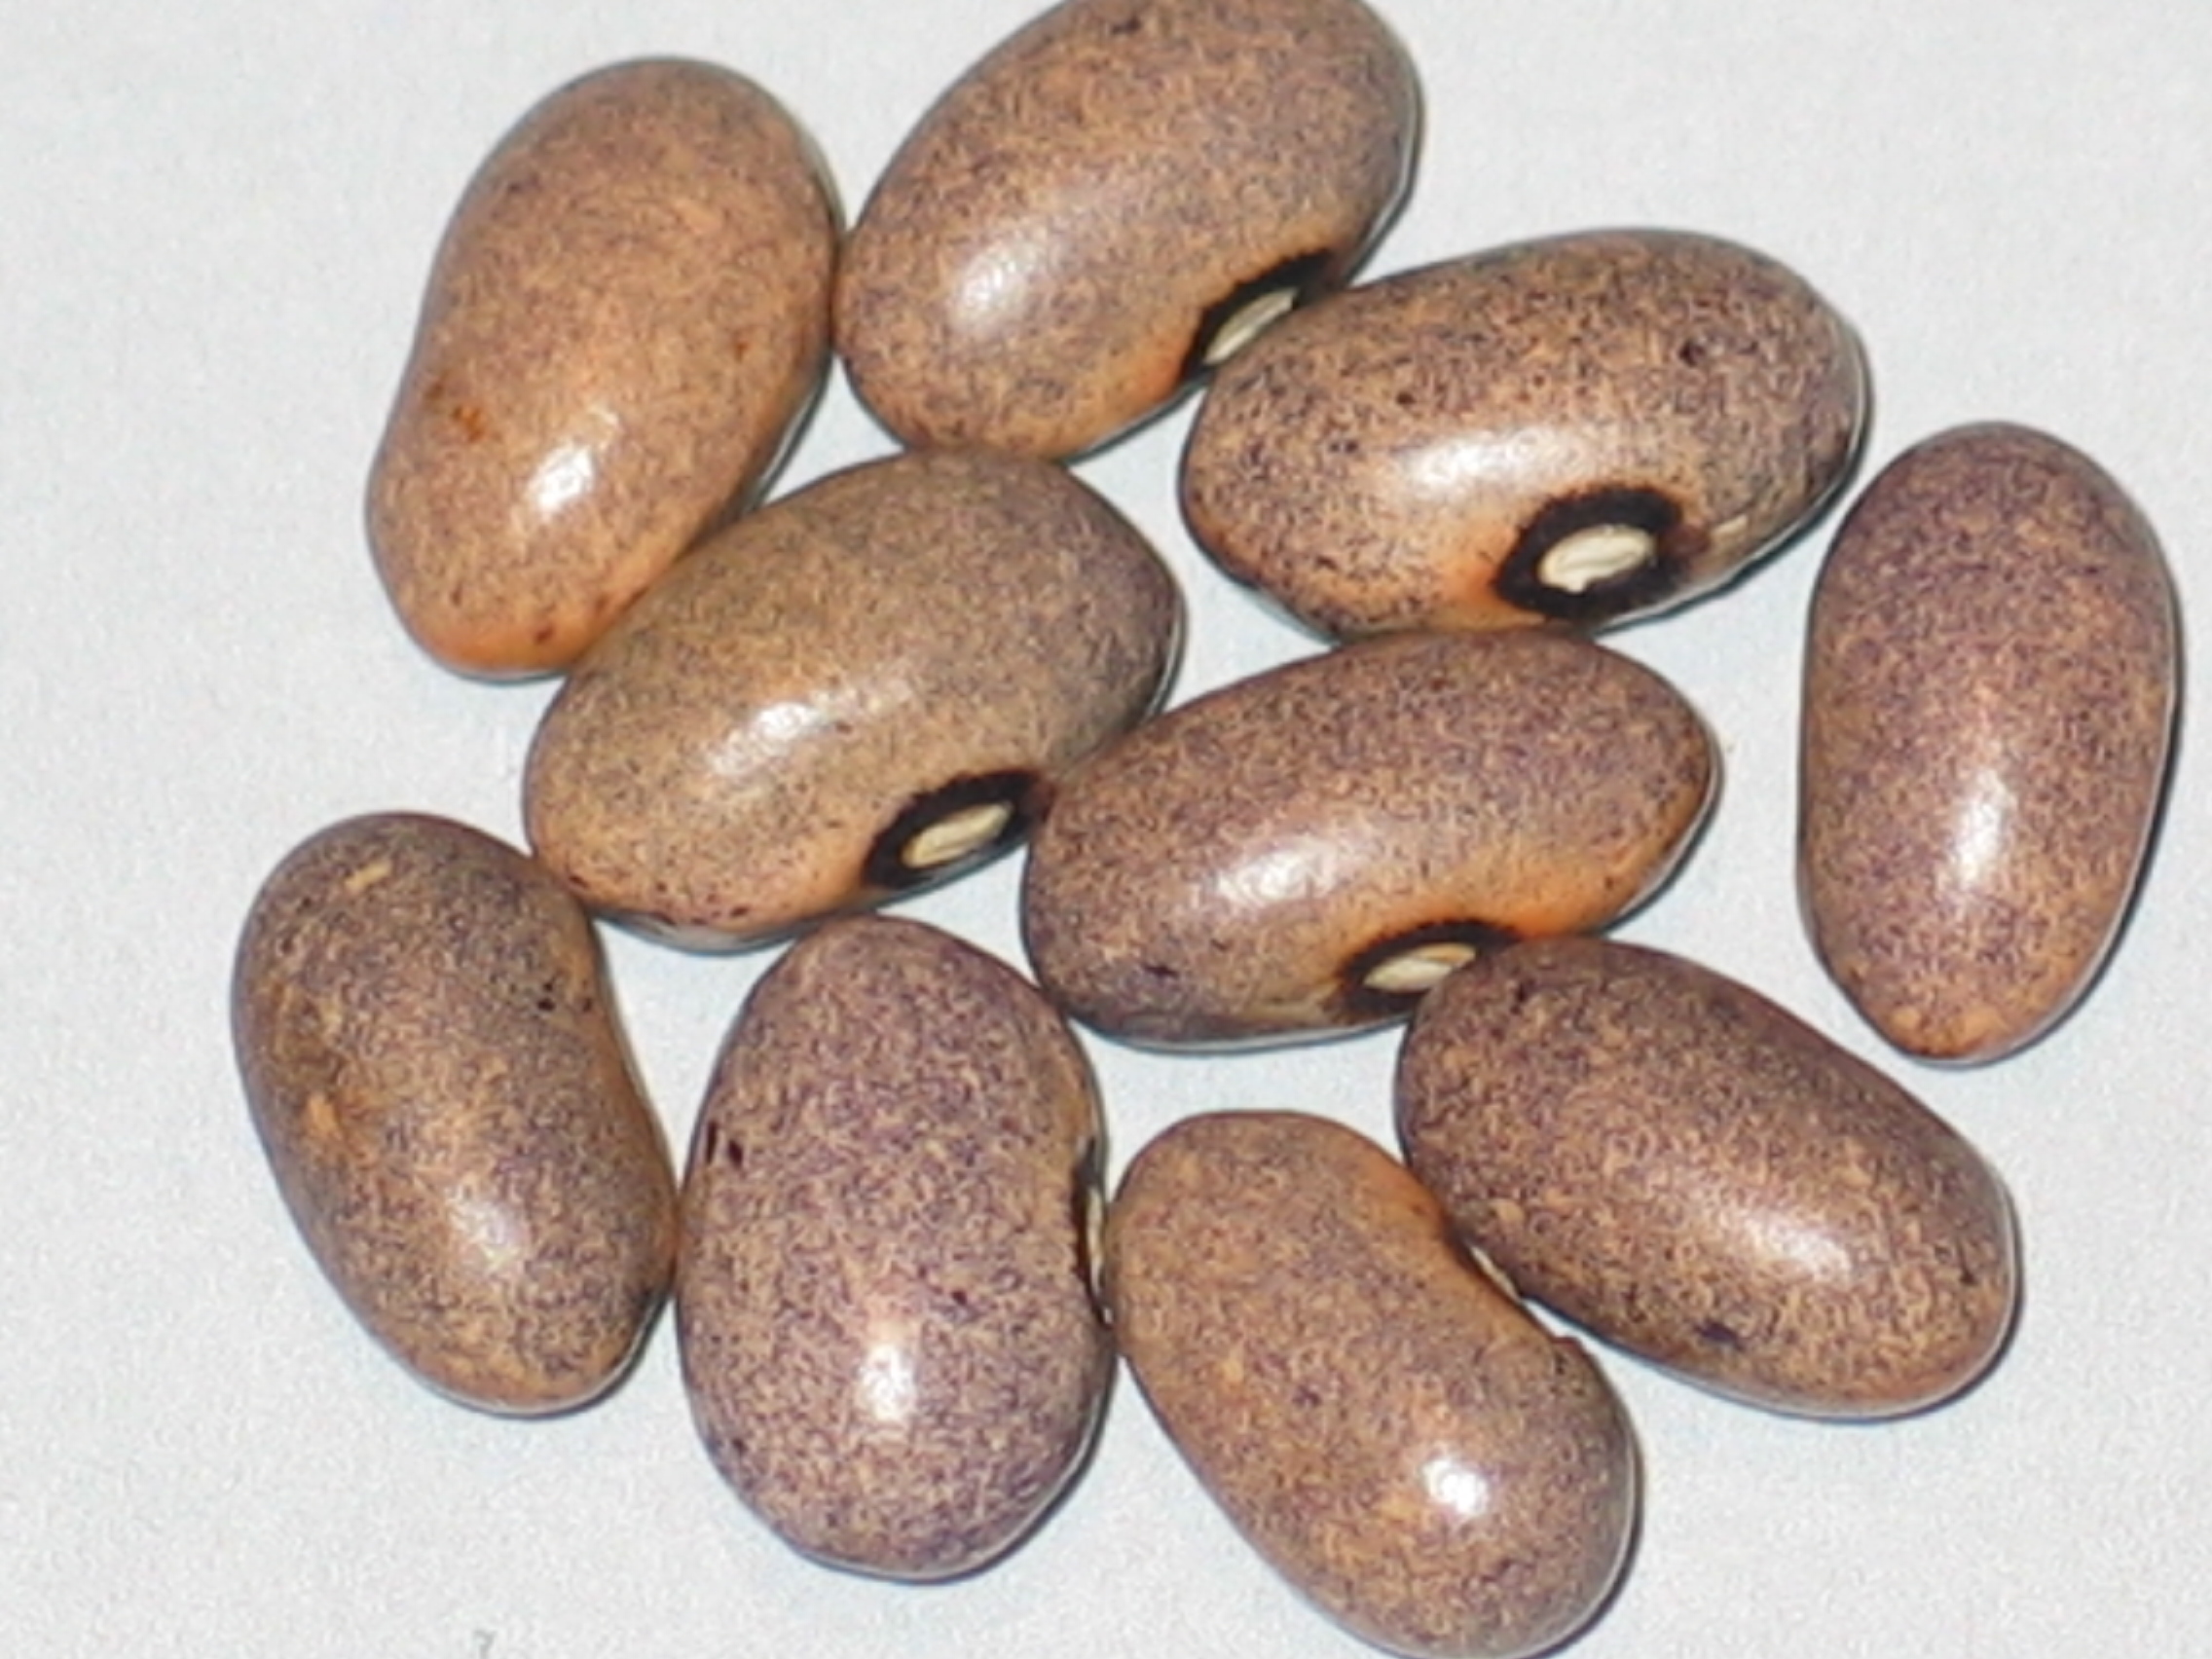 image of Ugandan Bihimba beans